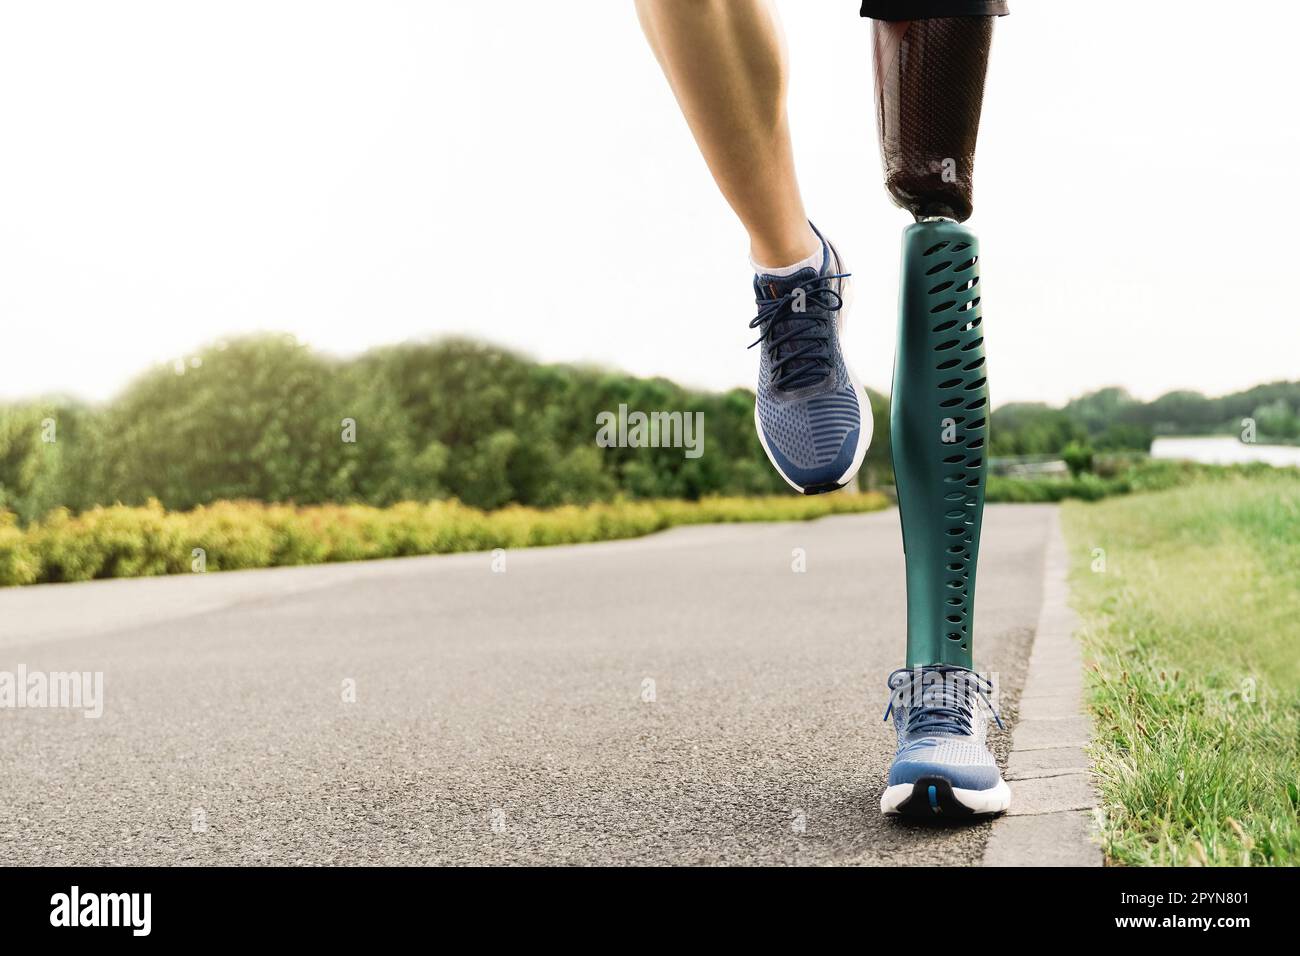 Sportler mit Beinprothese beim Laufen in Park City - körperliche Behinderung, gesundes Lebensstil-Konzept Stockfoto